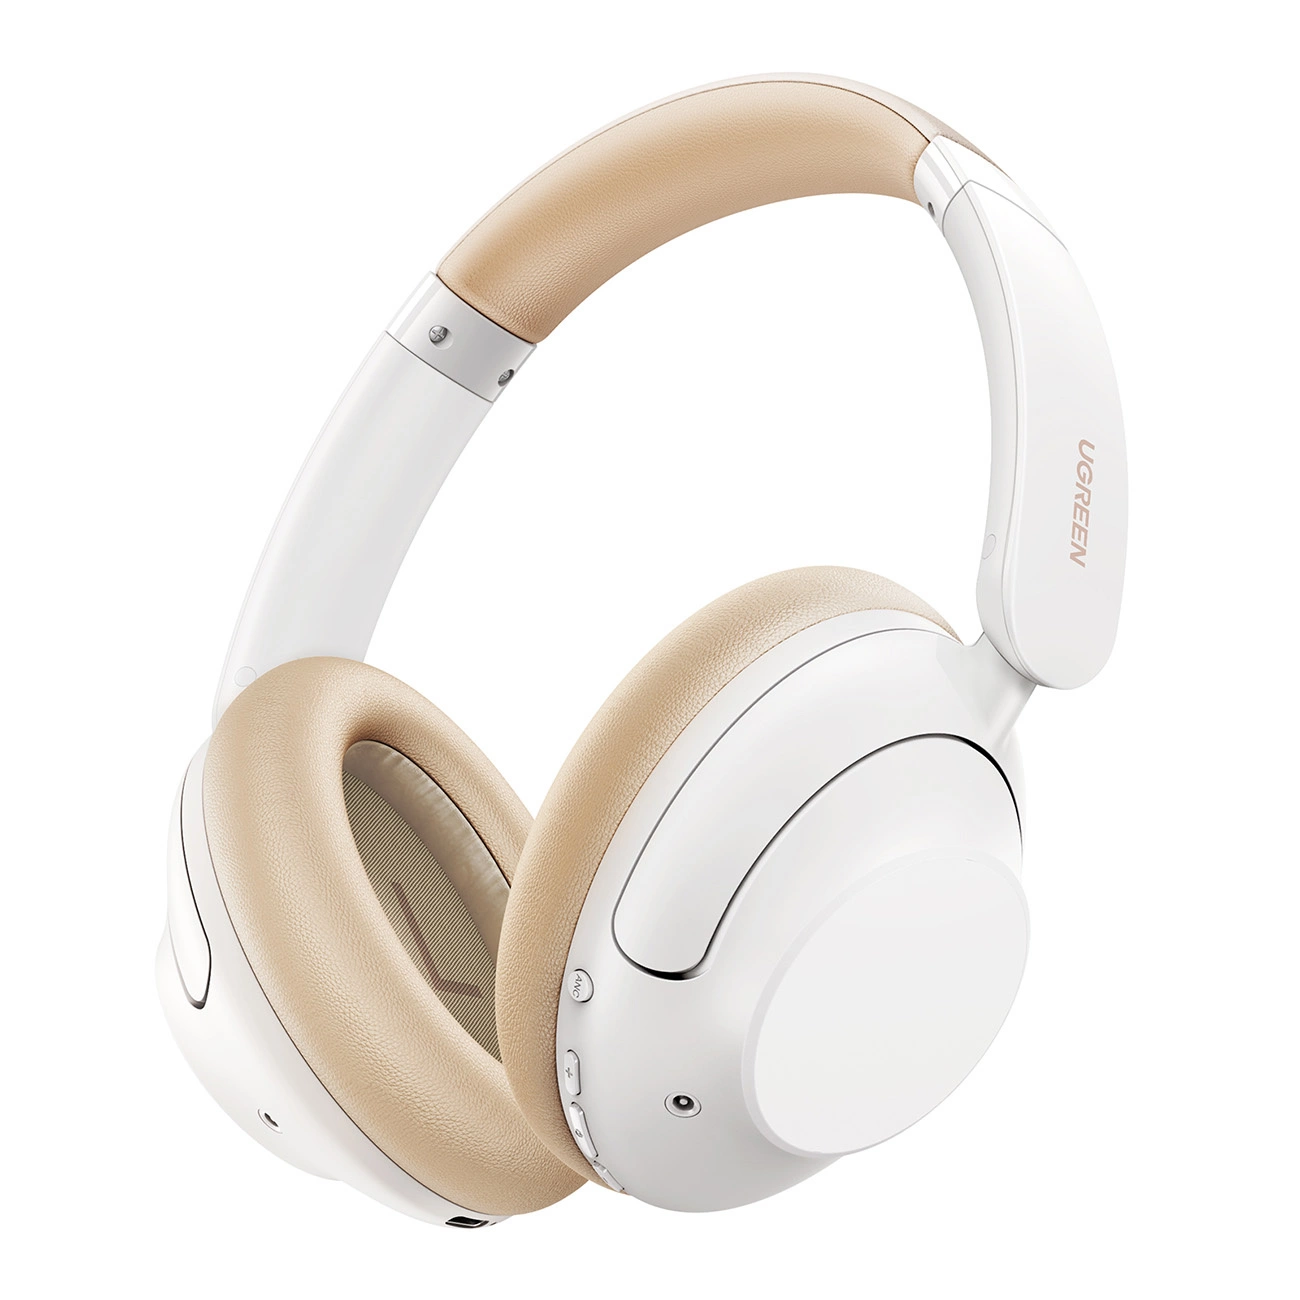 Bezdrátová sluchátka do uší Ugreen HP202 HiTune Max5 s hybridním potlačením šumu ANC - bílá